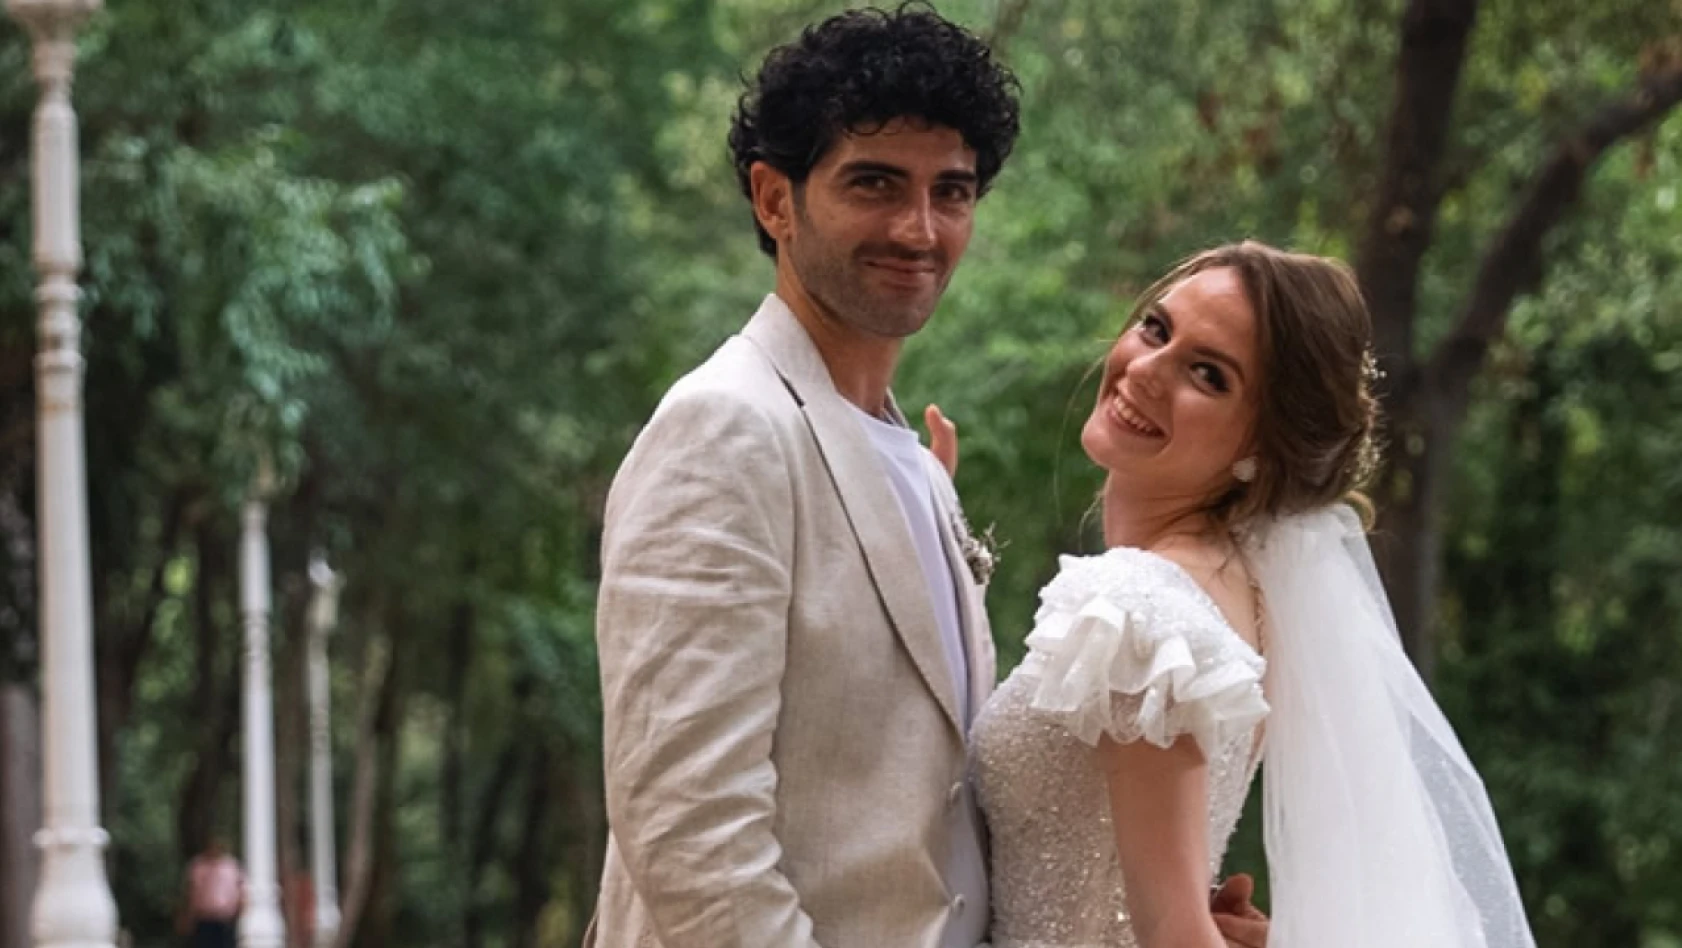 Oyuncu Hatice İrkin ve yönetmen Fırat Sevin evlendi